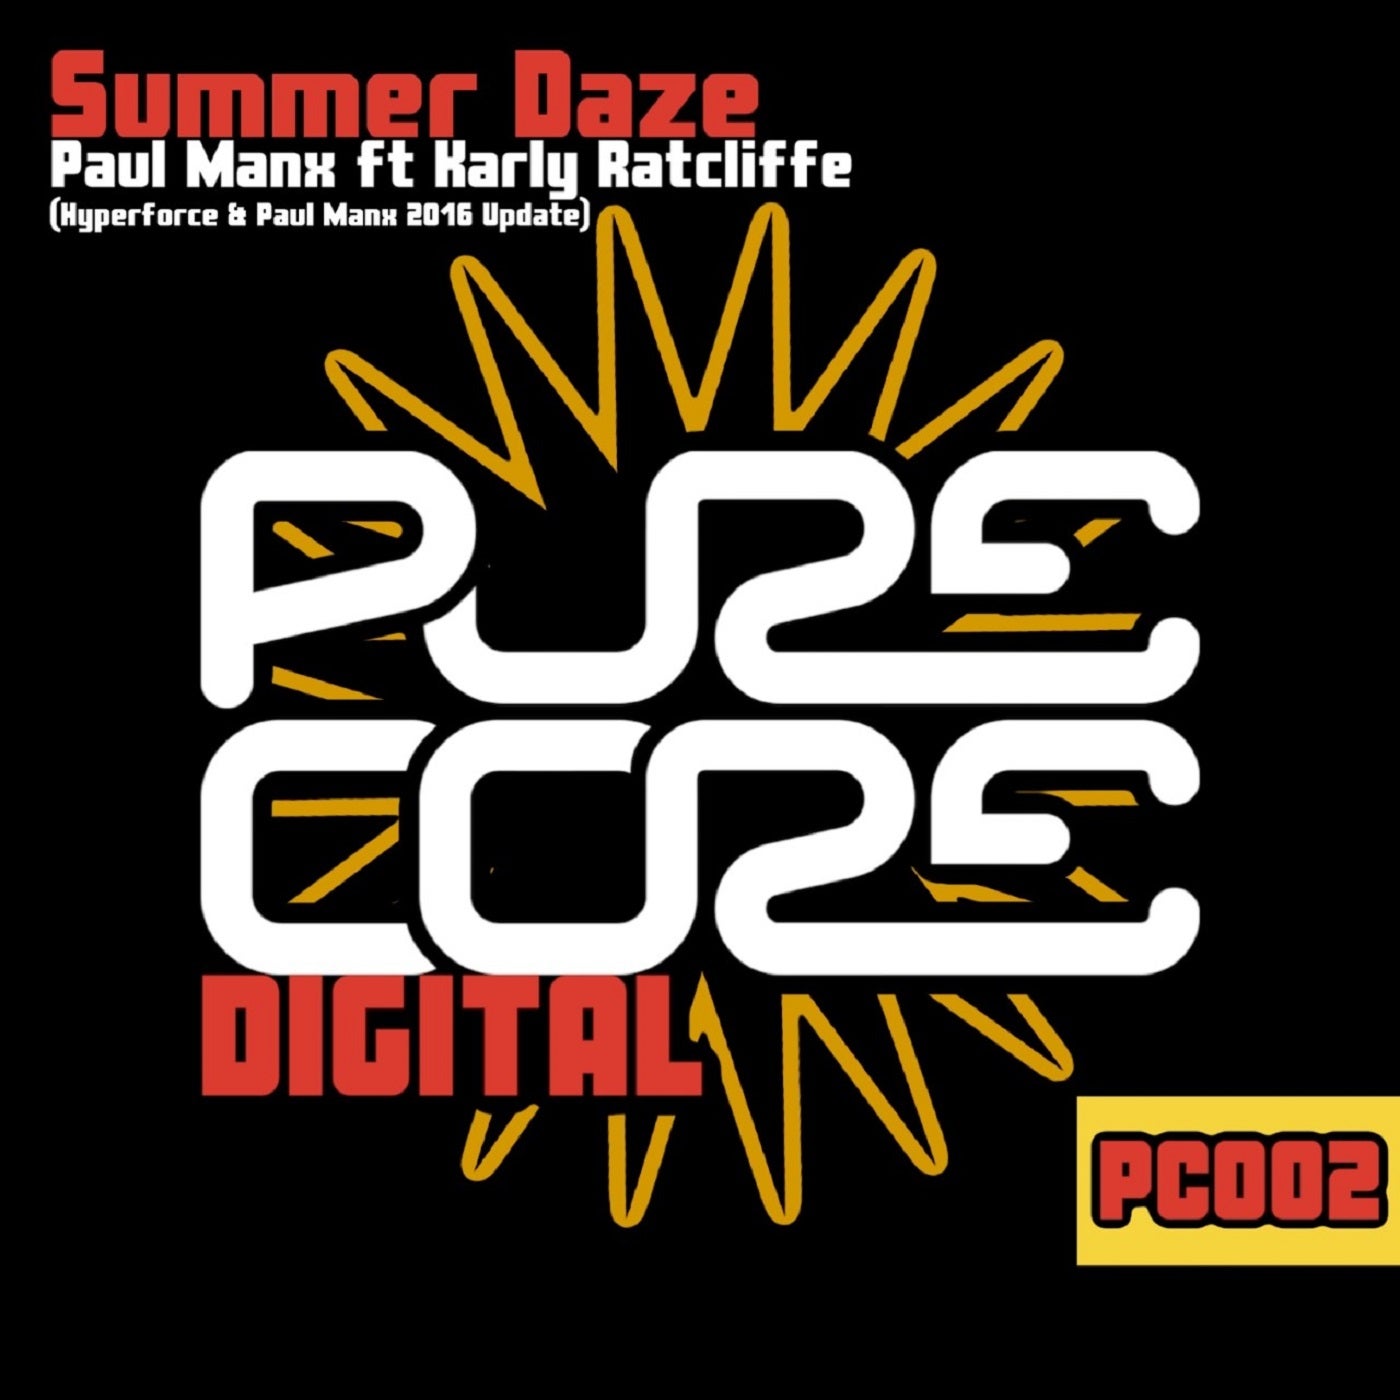 Summer Daze (Hyperforce & Paul Manx Update)